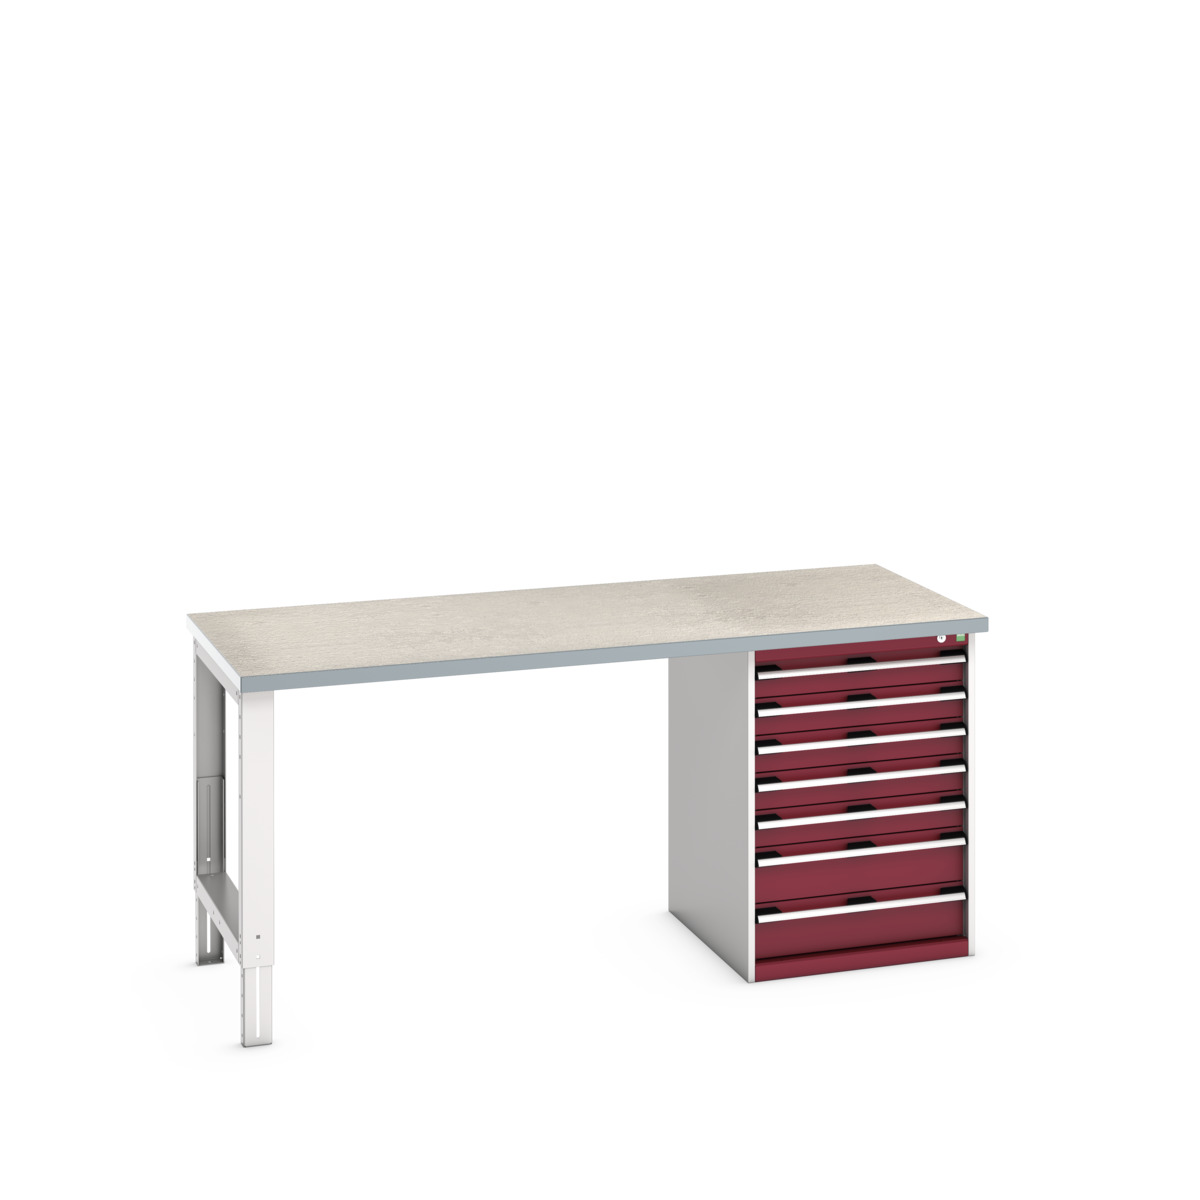 41004124.24V - cubio pedestal bench (lino)